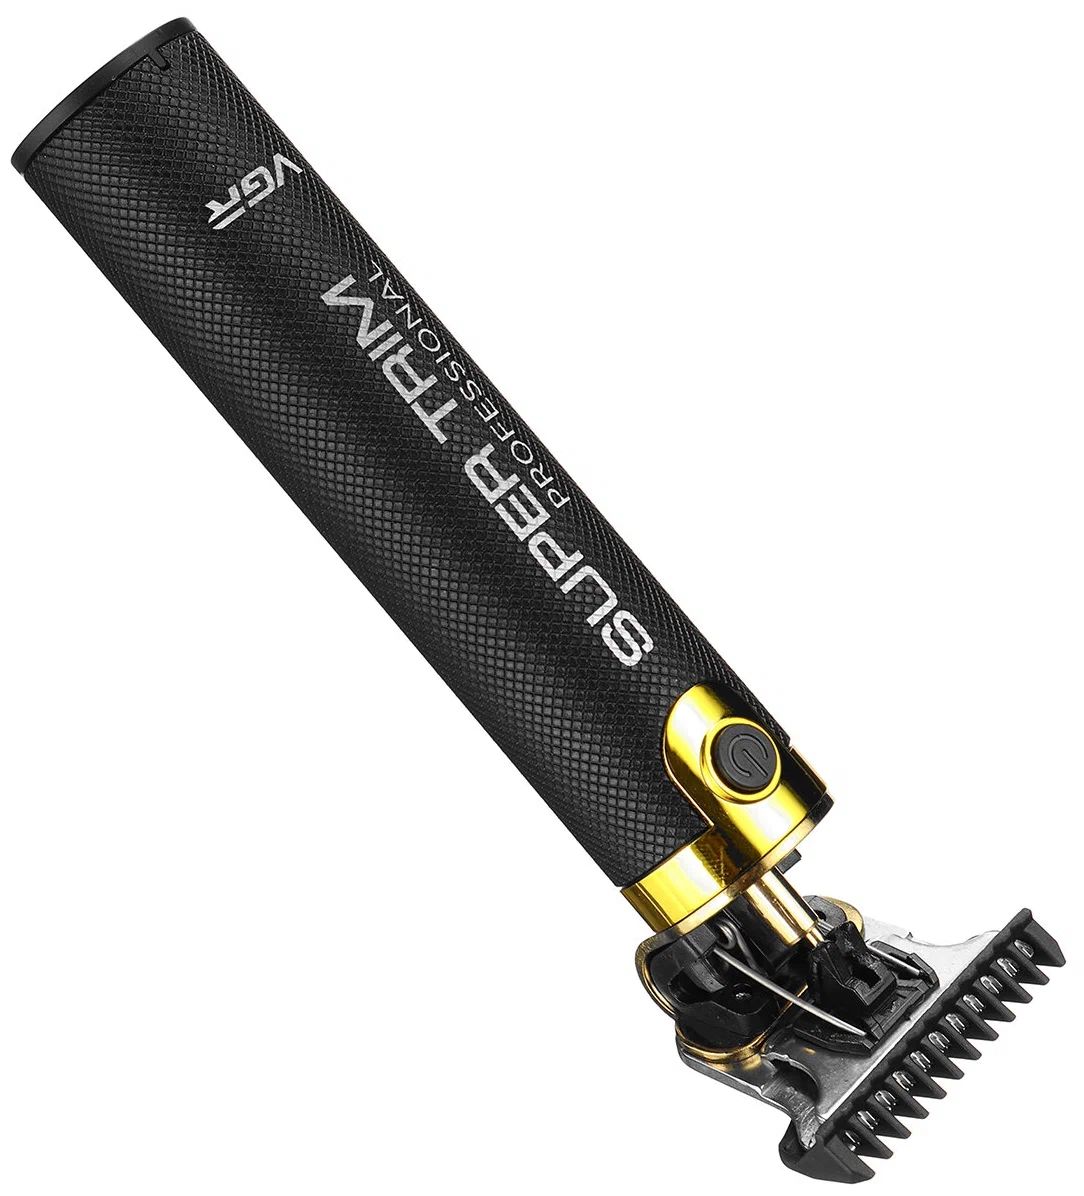 Машинка для стрижки волос VGR V-082 черный, золотистый enhcen boost триммер для волос usb зарядное устройство электрическая машинка для стрижки волос